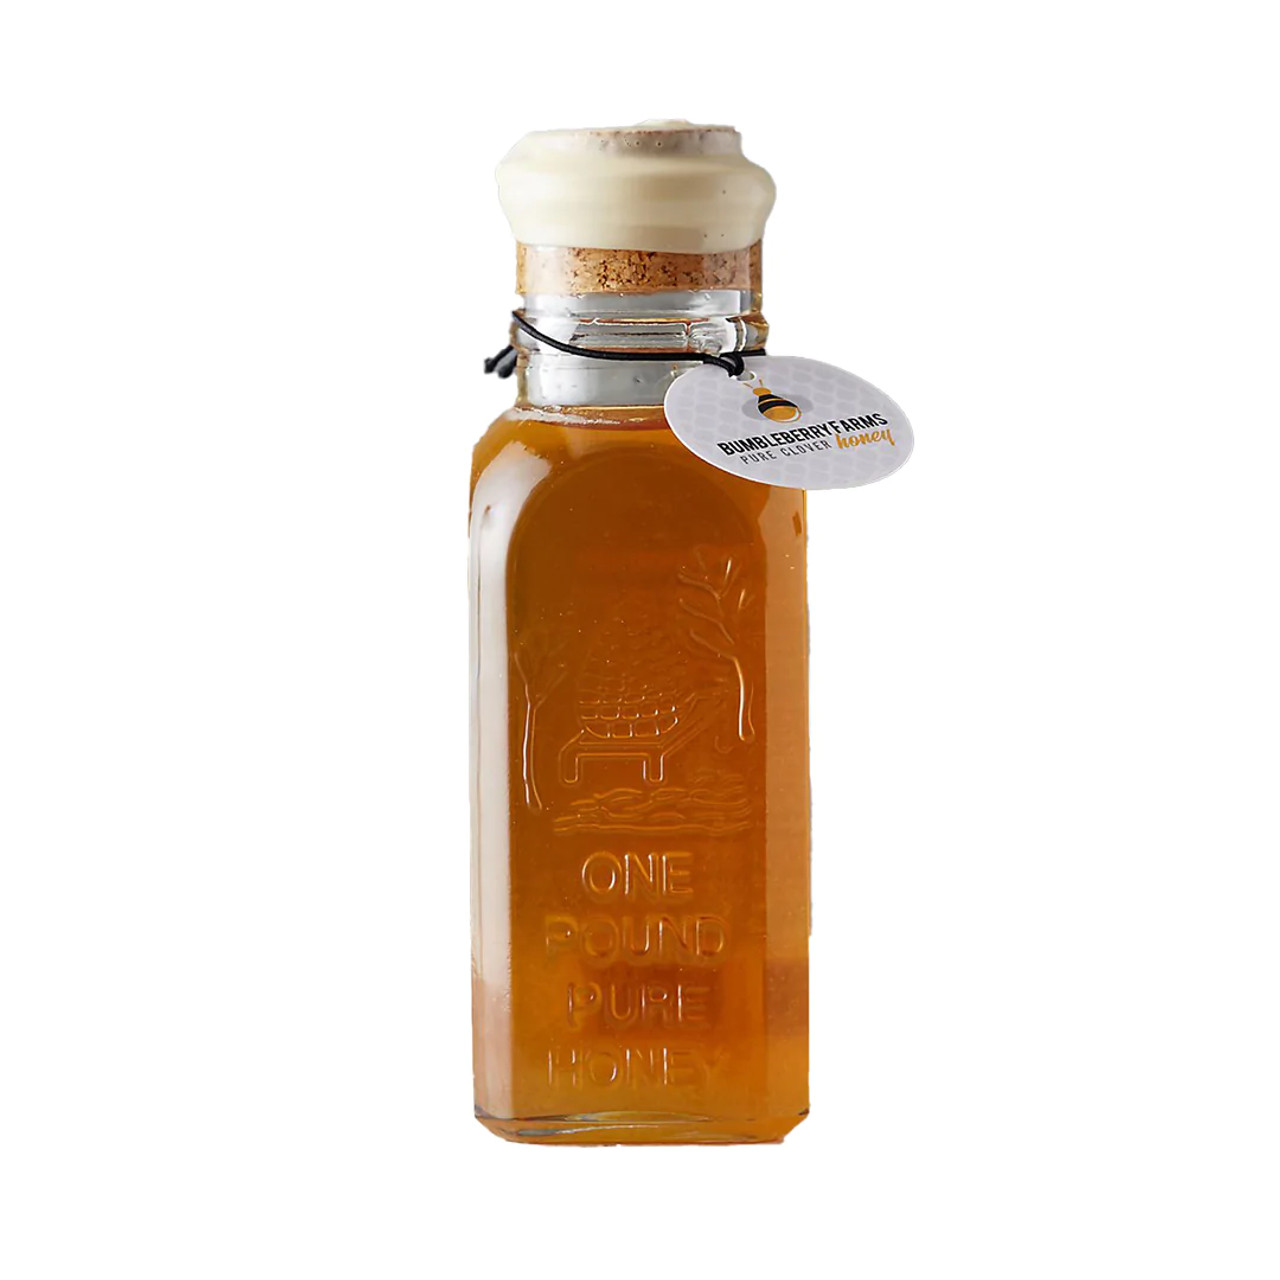 VONBEE Passion Fruit Honey Puree 2.6LBS